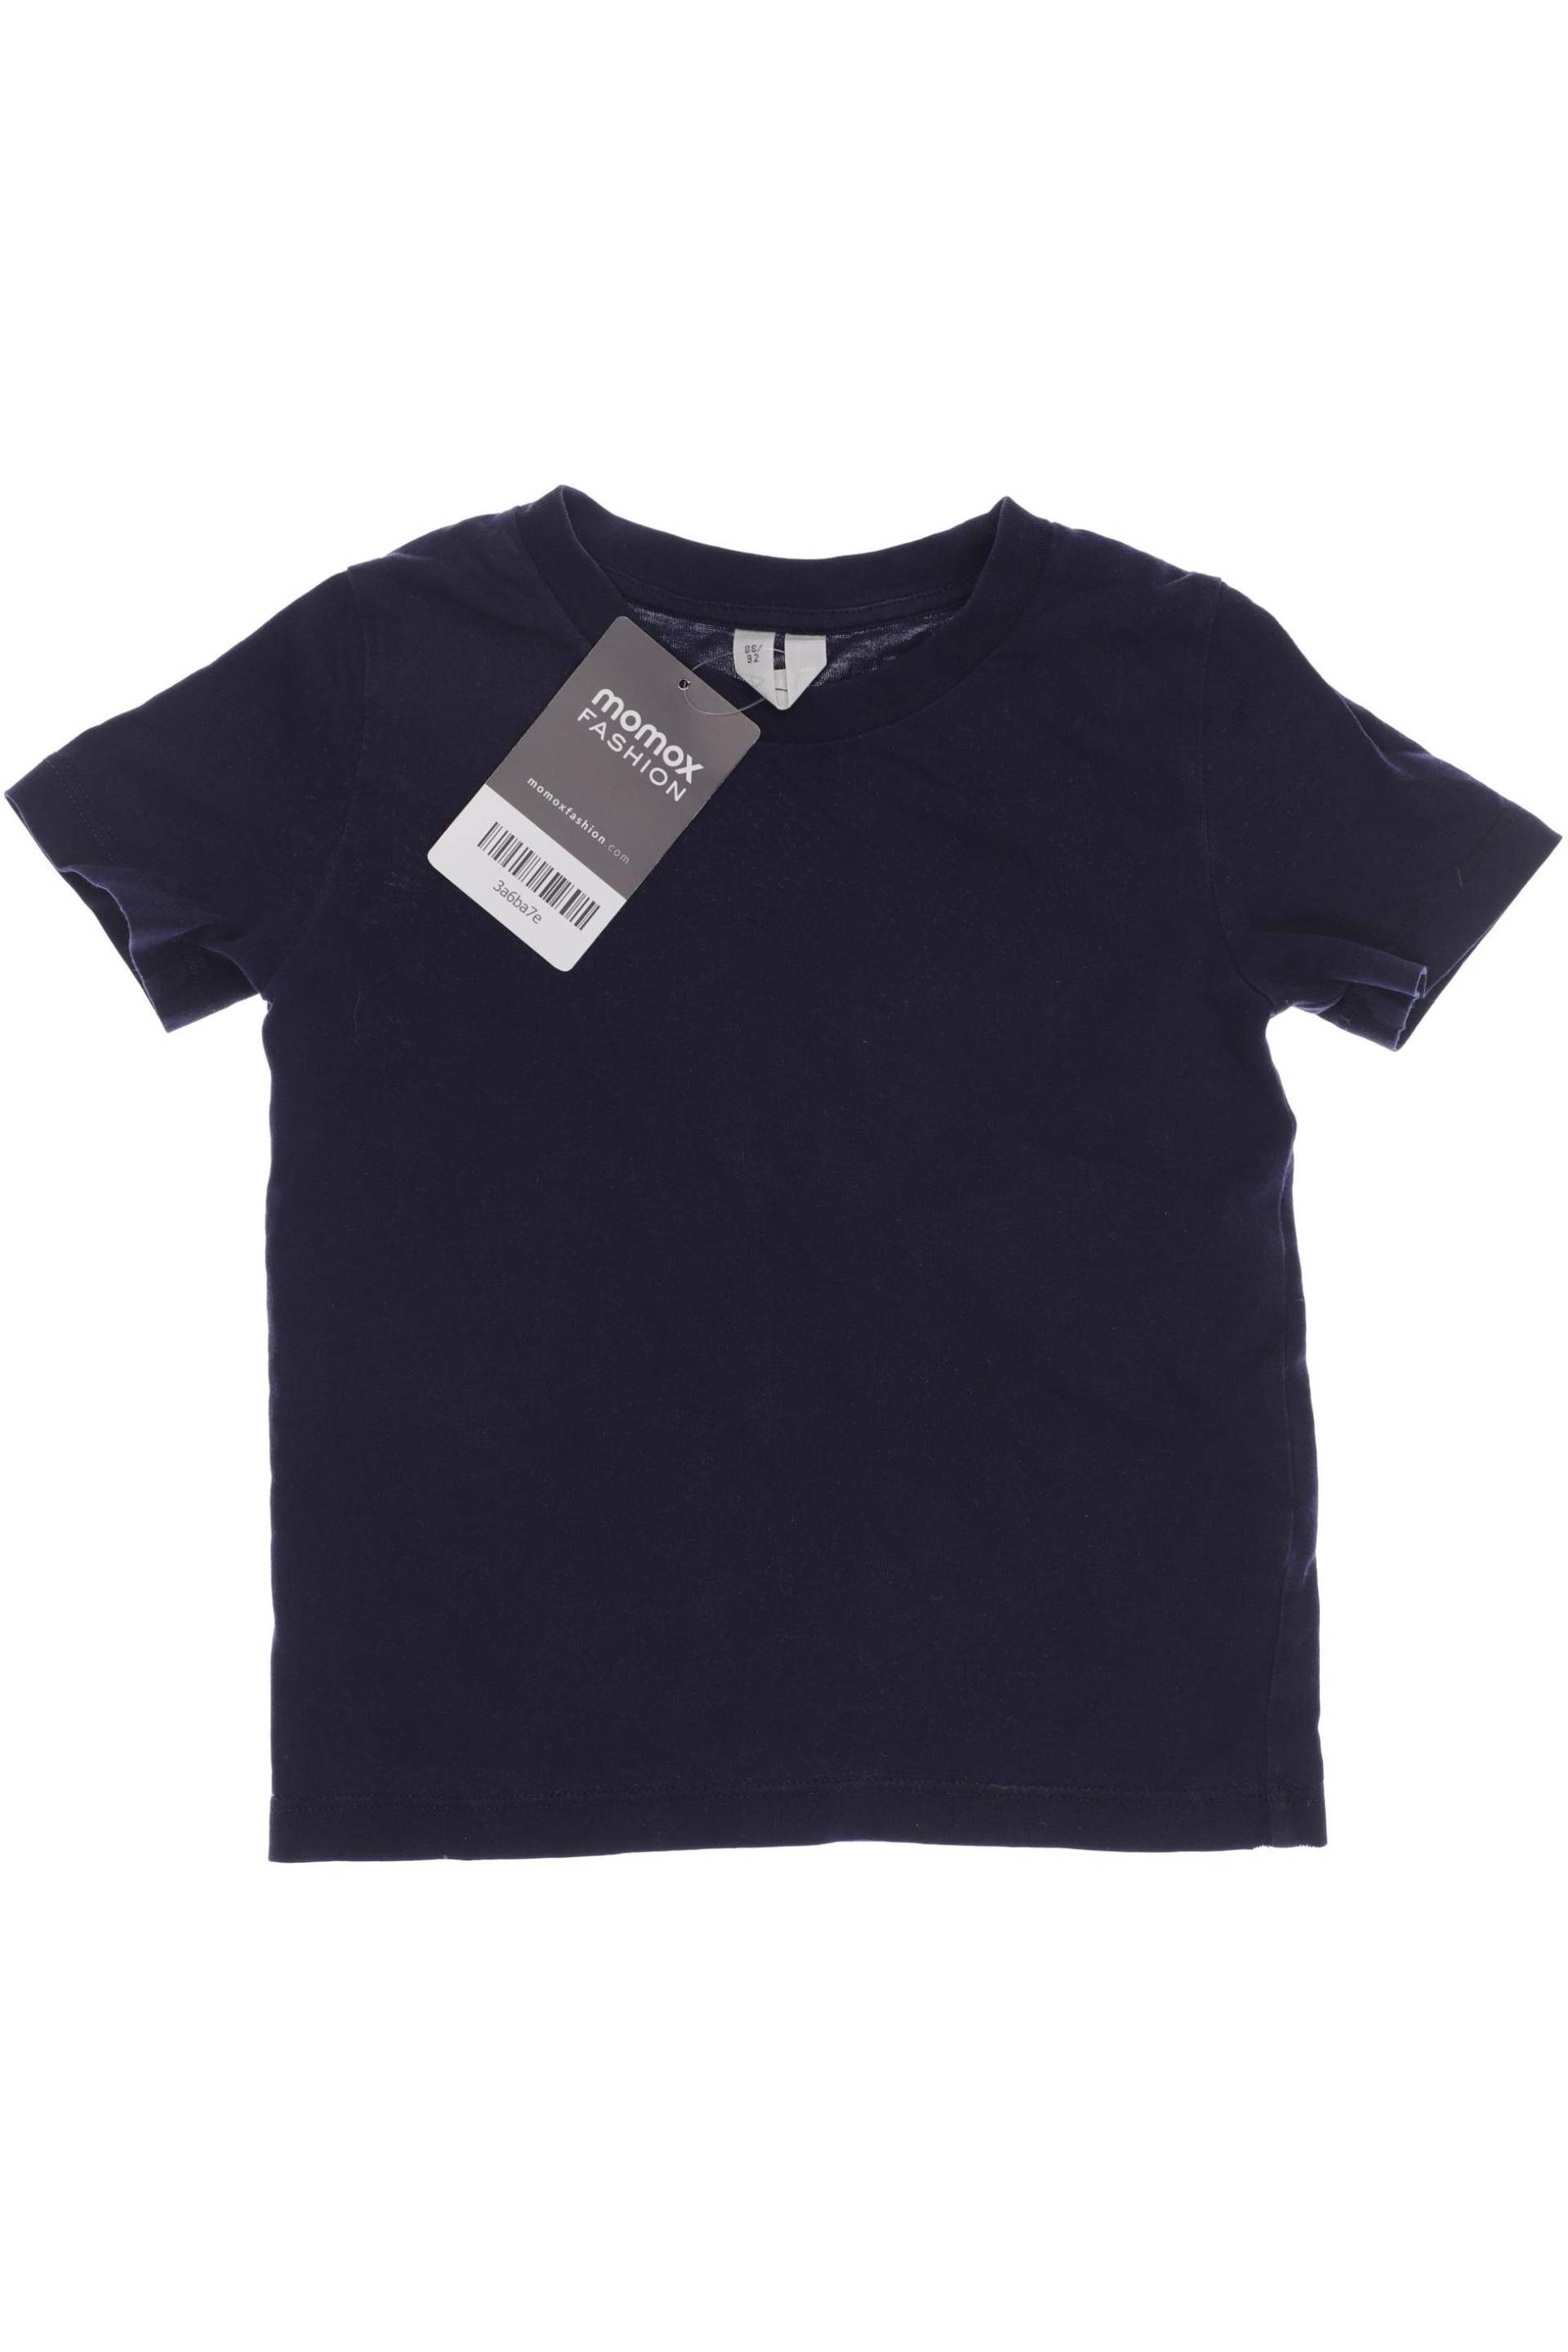 Arket Herren T-Shirt, marineblau, Gr. 86 von Arket